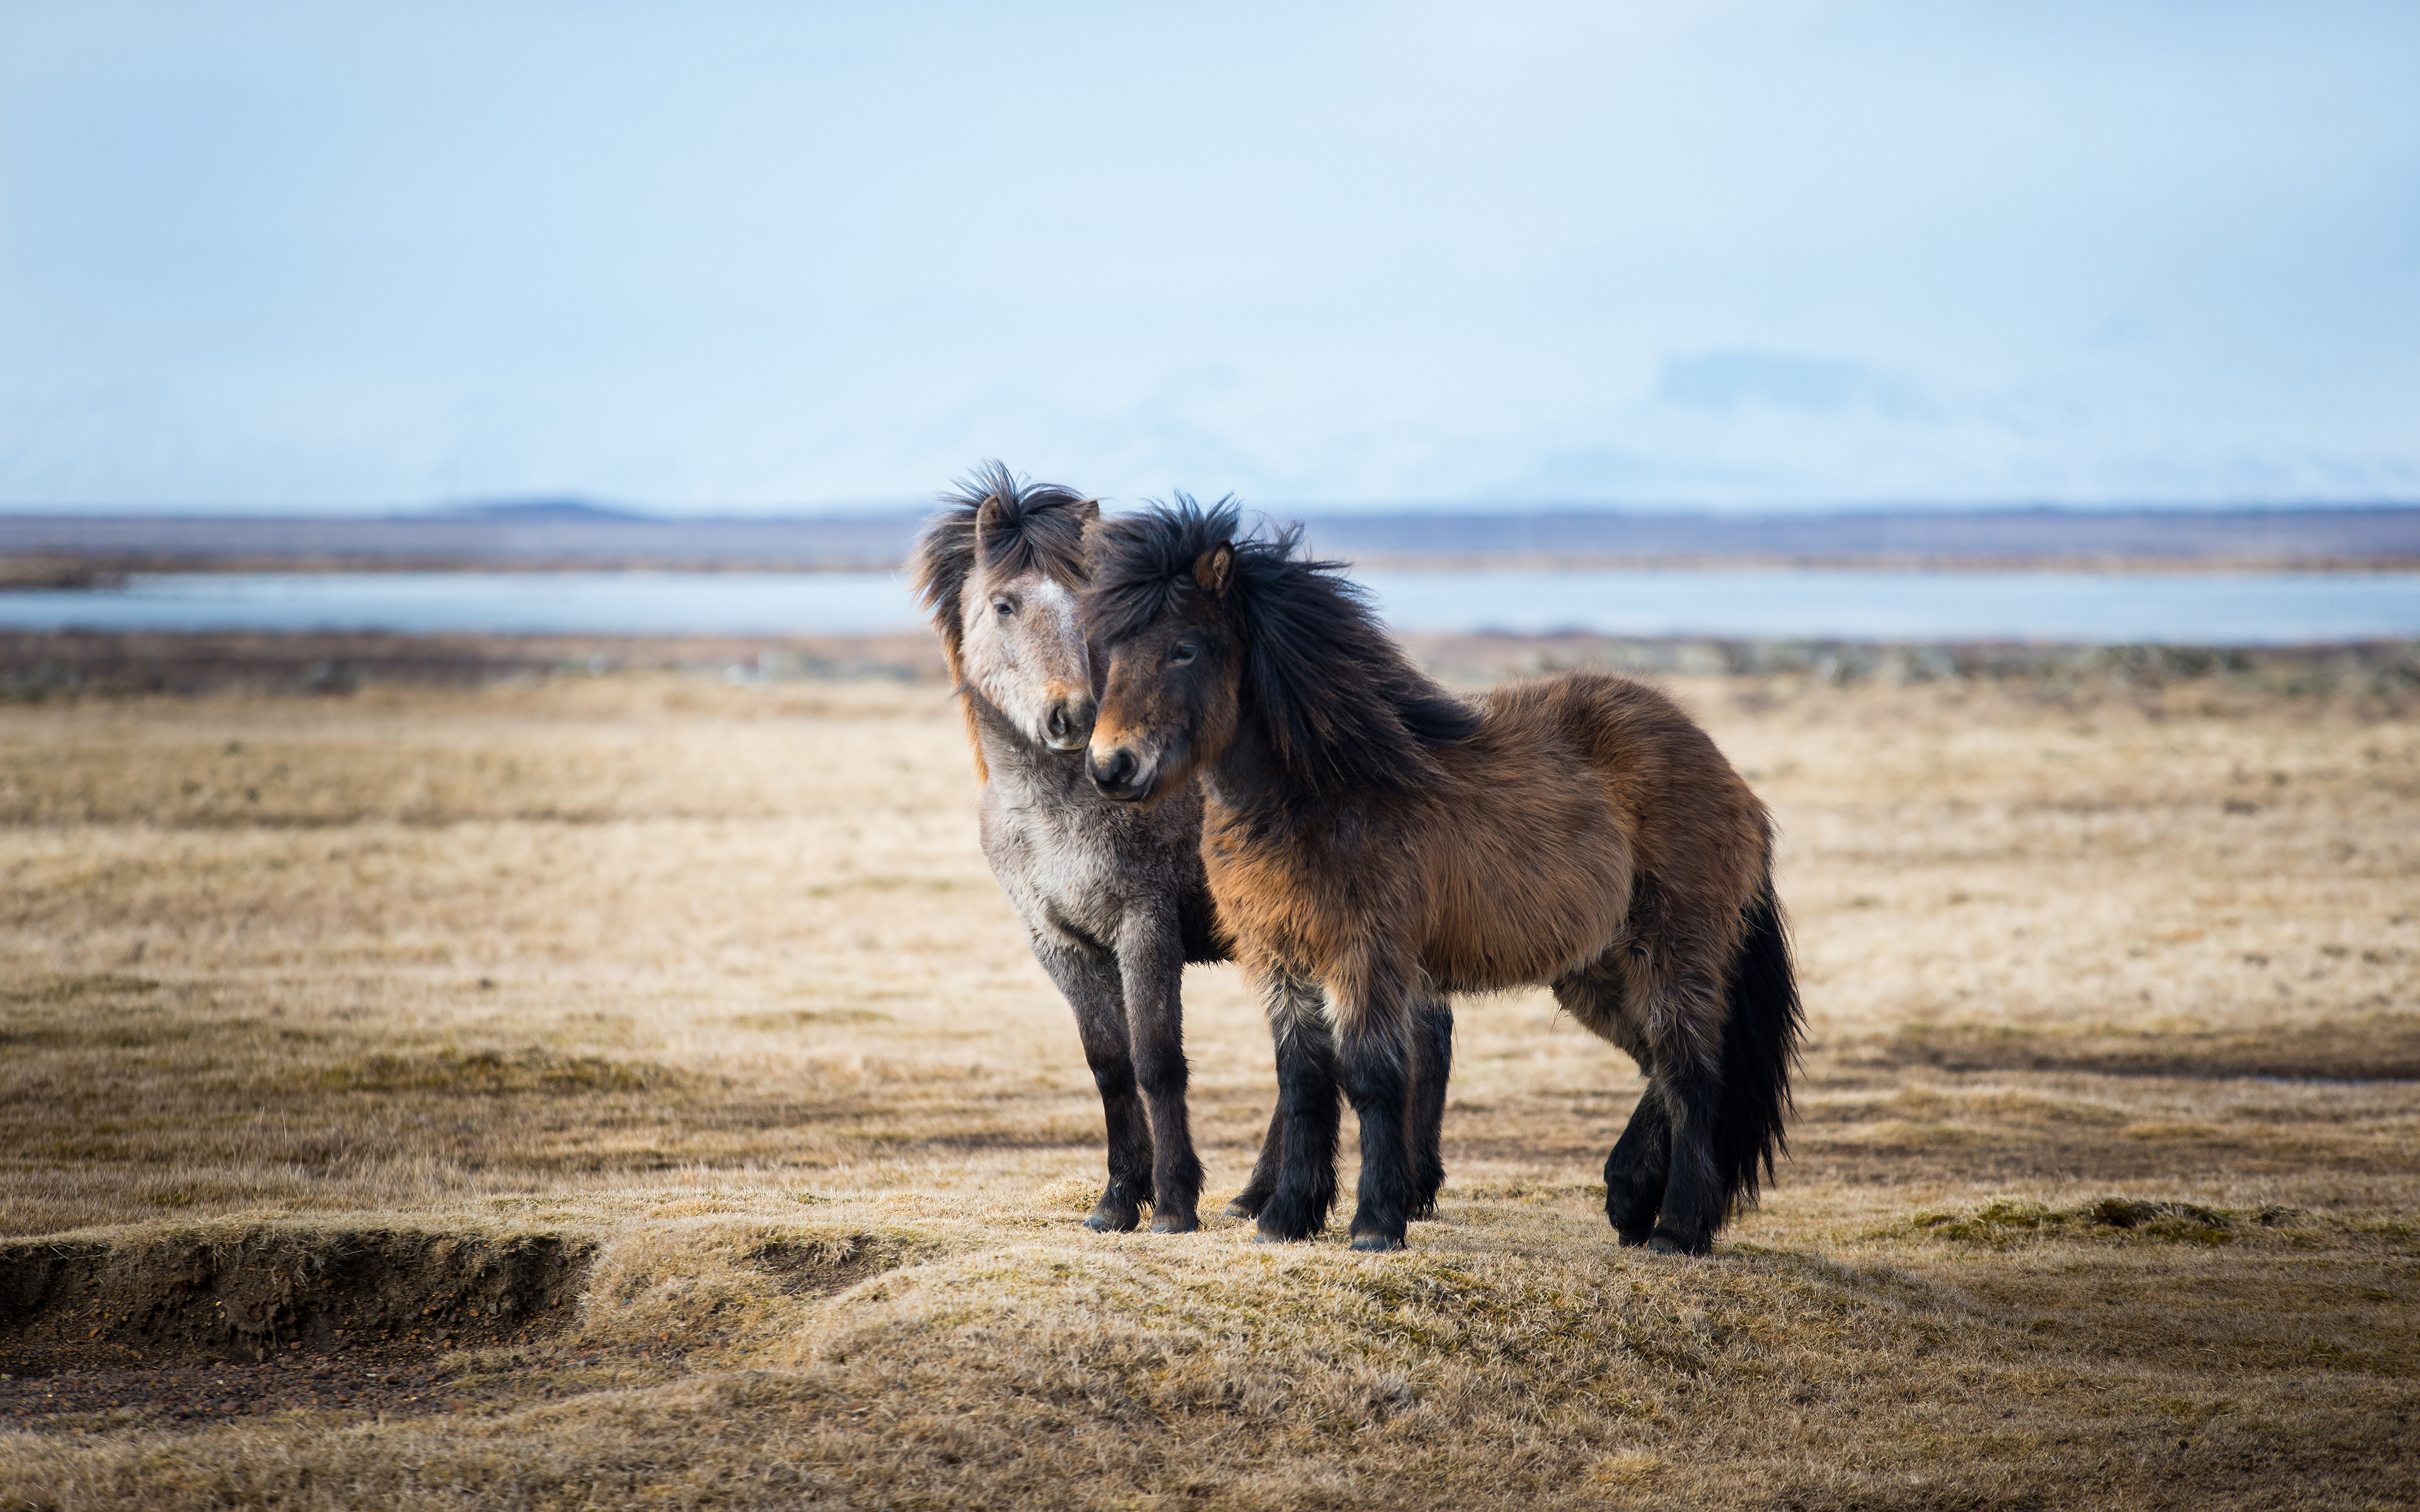 General 3840x2400 animals horse mammals nature outdoors Mongolian horse sunlight standing fur depth of field